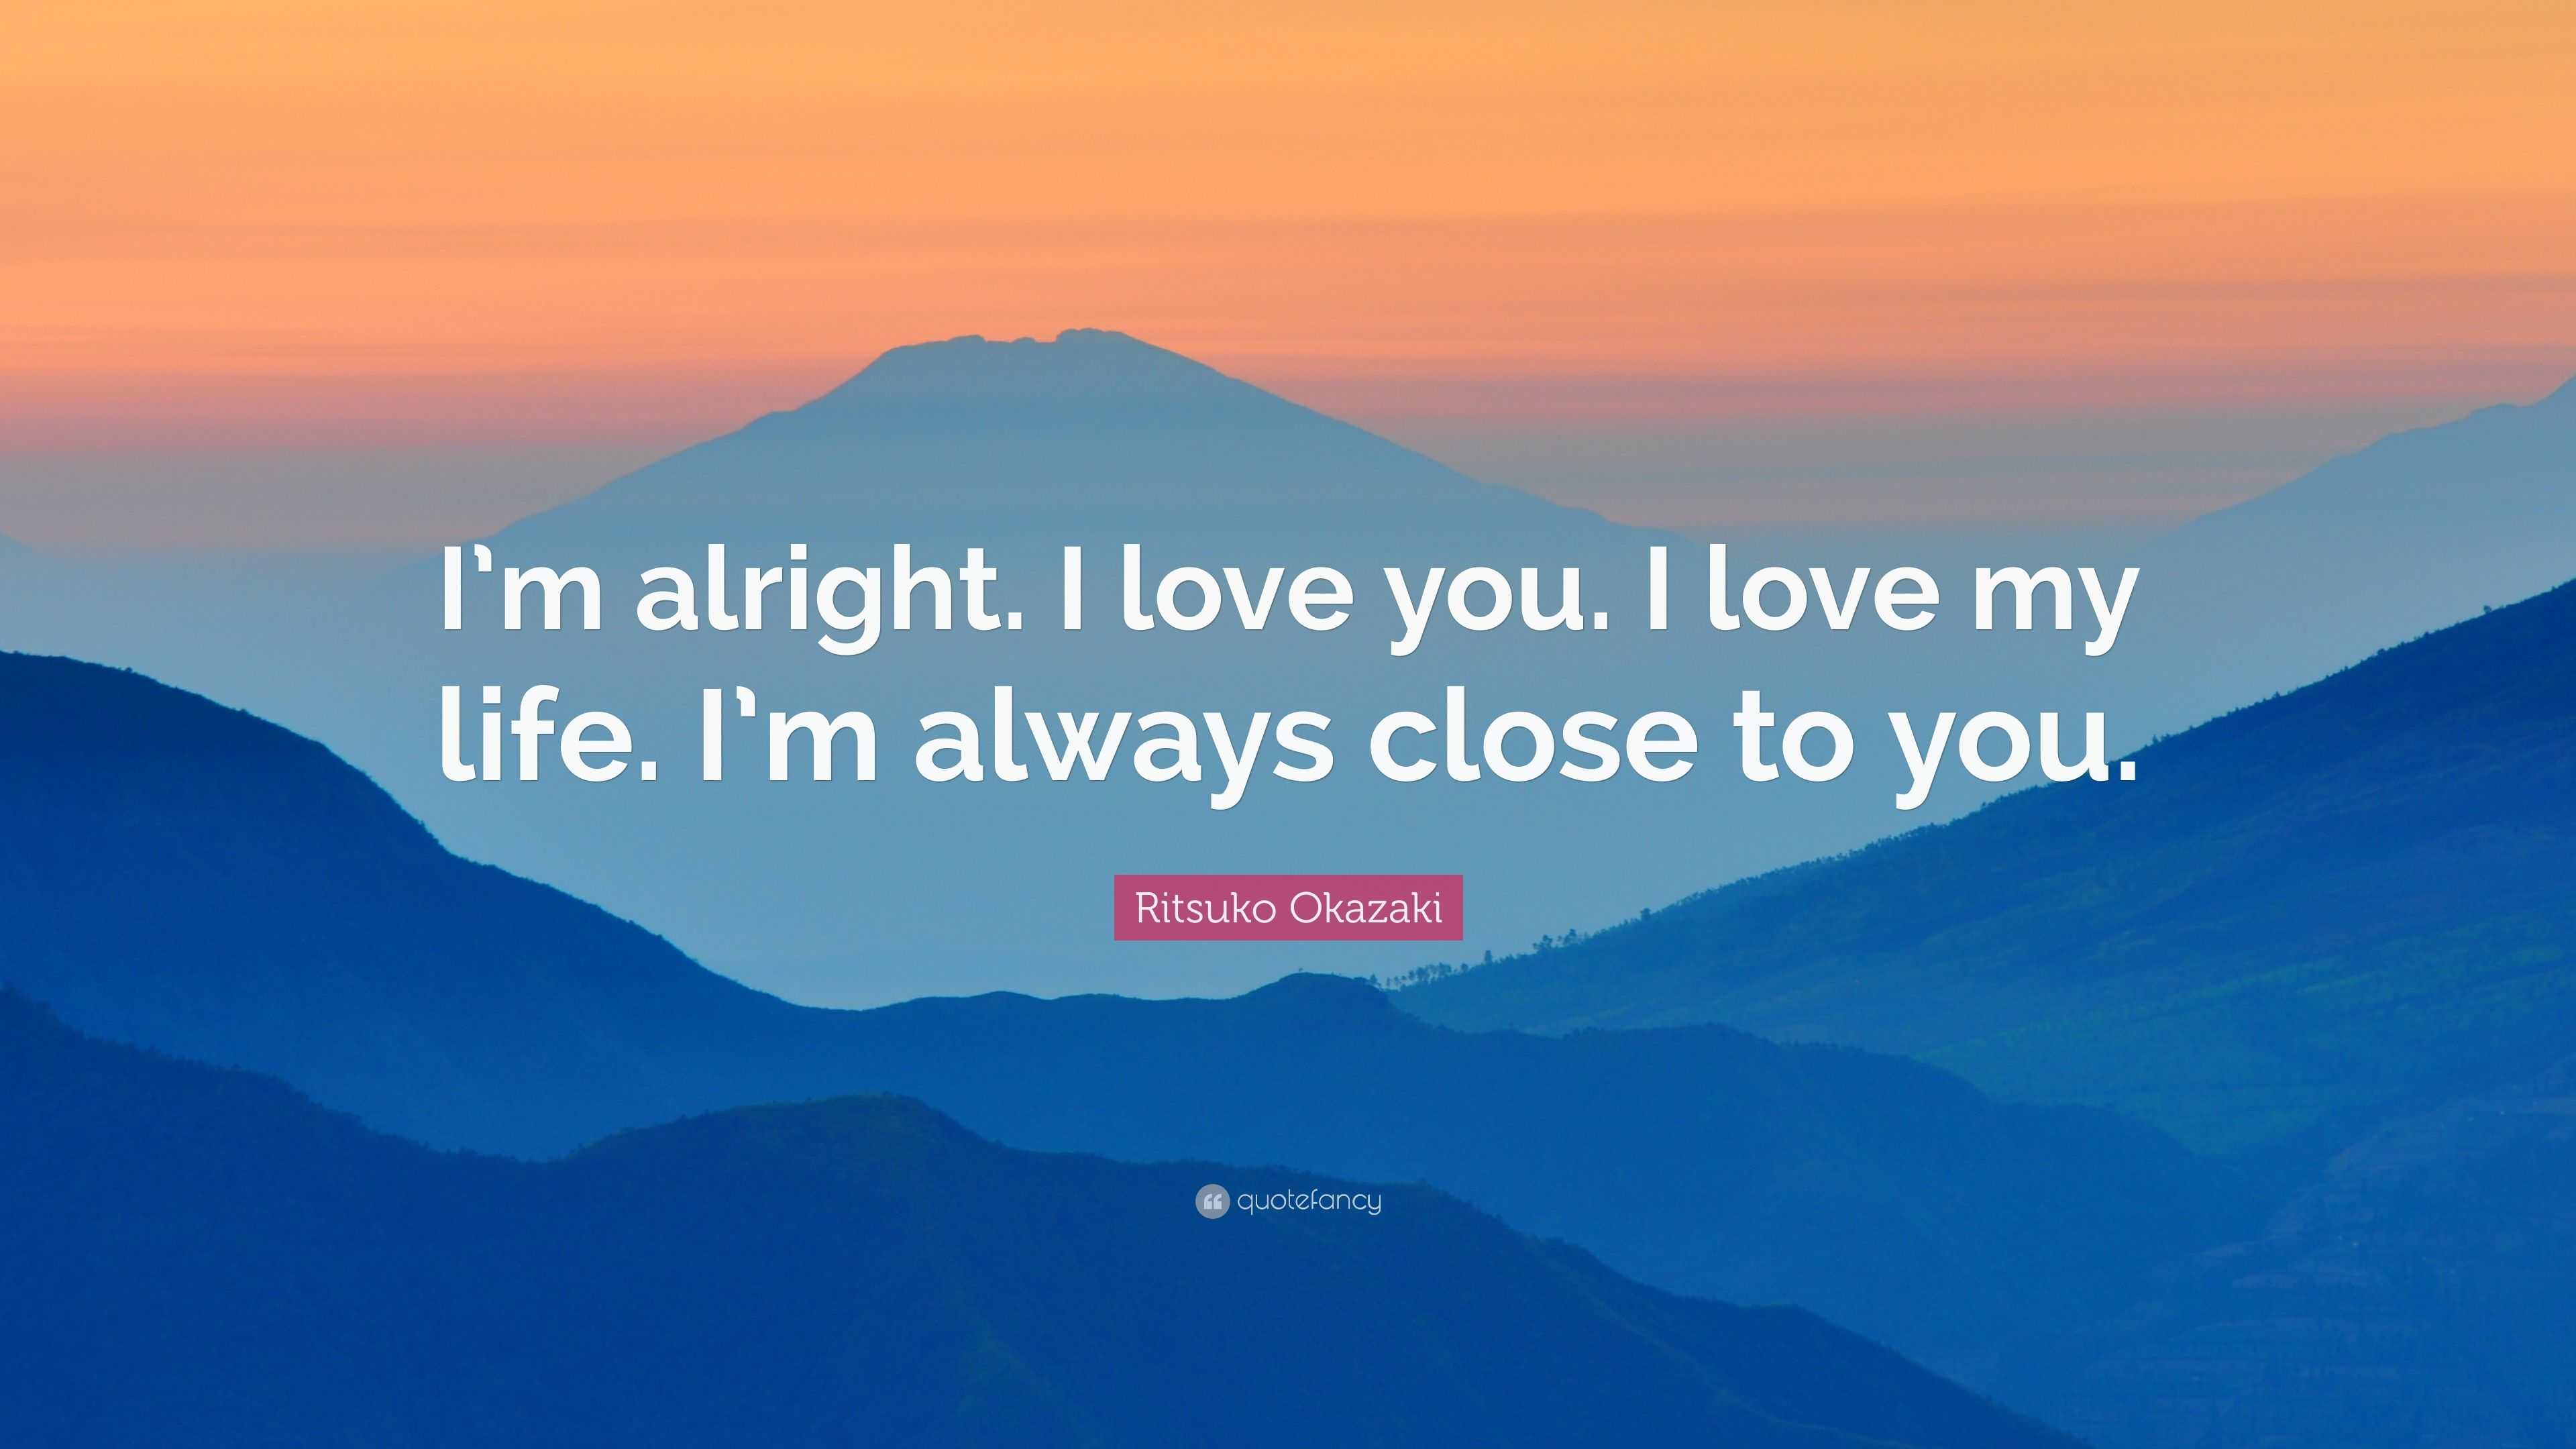 Ritsuko Okazaki Quote: “I’m alright. I love you. I love my life. I’m ...